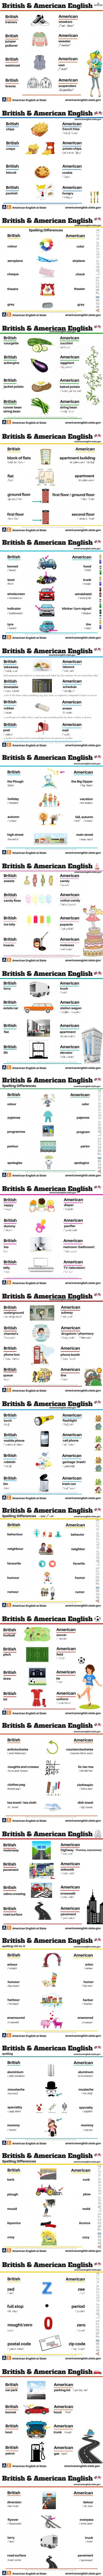 British vs American slang